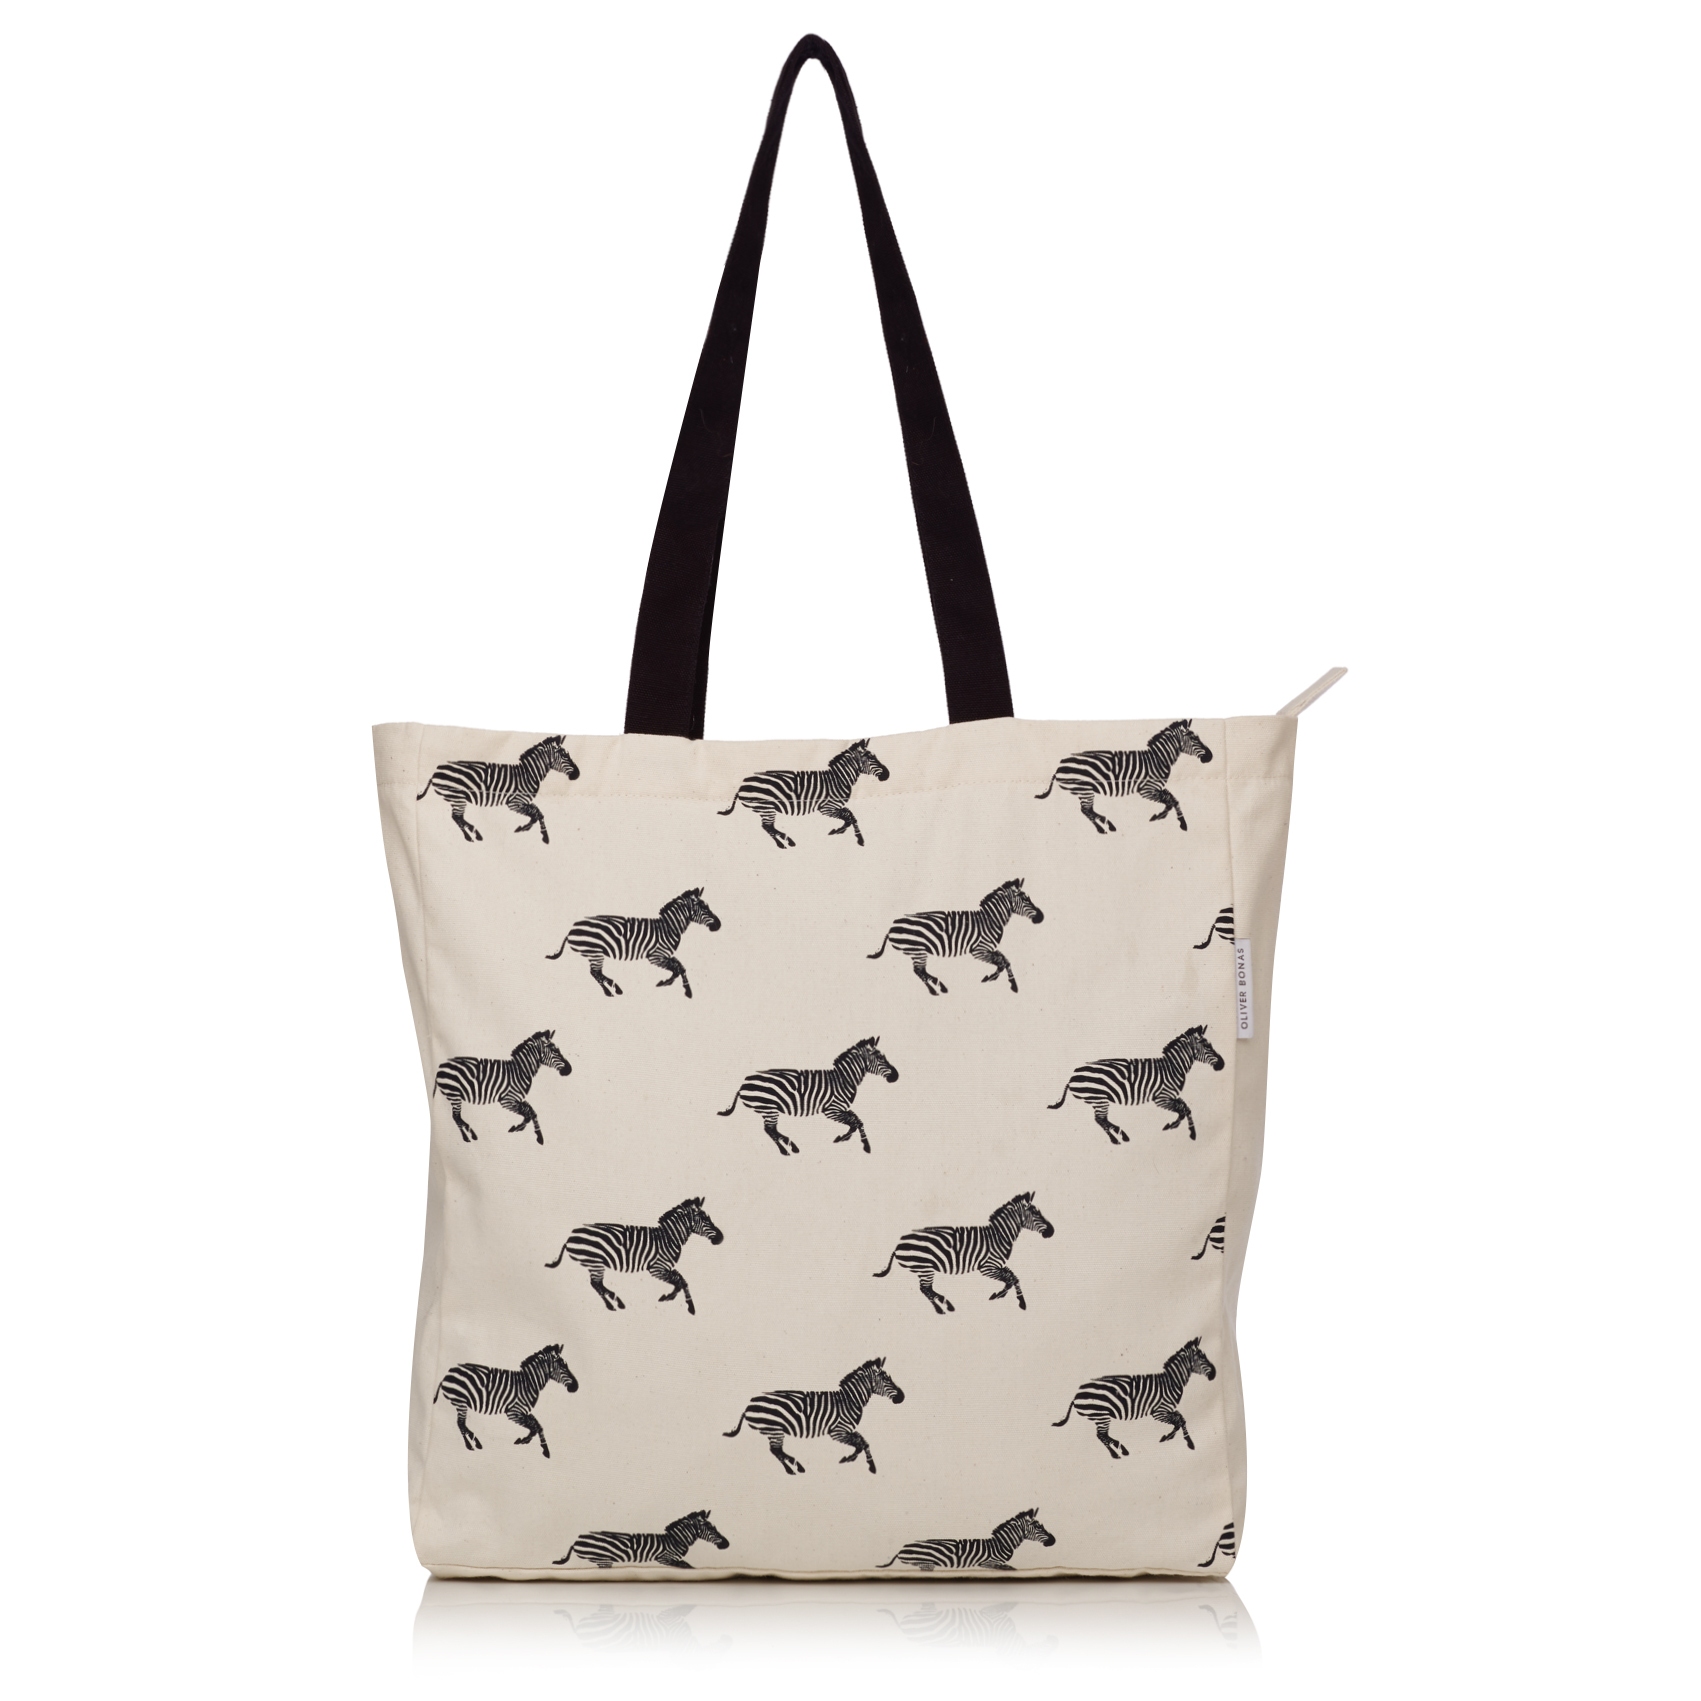 Zebra shopping bag